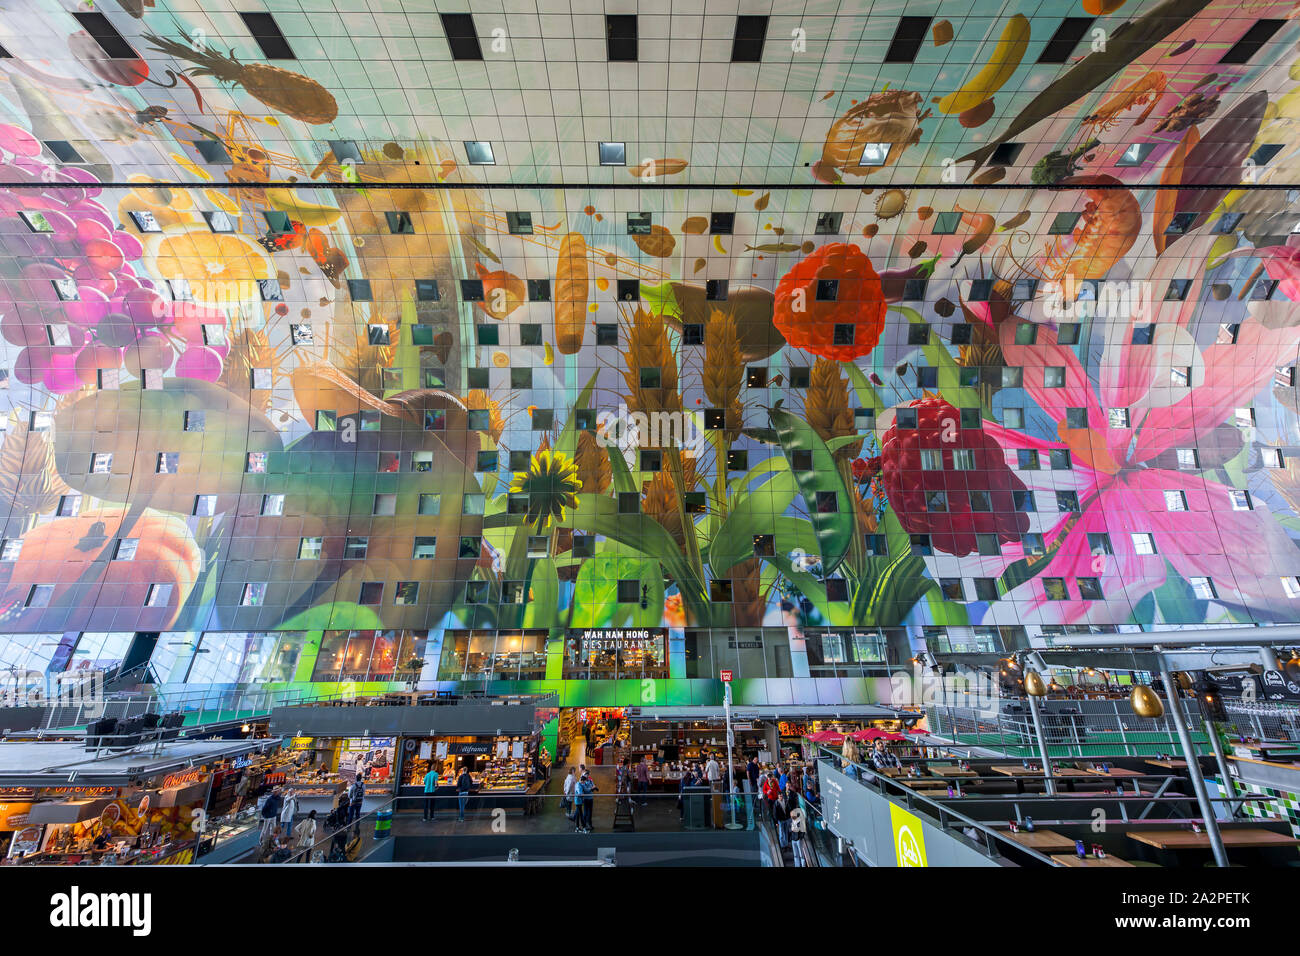 Die neue Halle in Rotterdam die erste überdachte Markt in den Niederlanden mit über 90 festen Marktstände, Lebensmittelgeschäfte, Bars, Cafés, Stockfoto